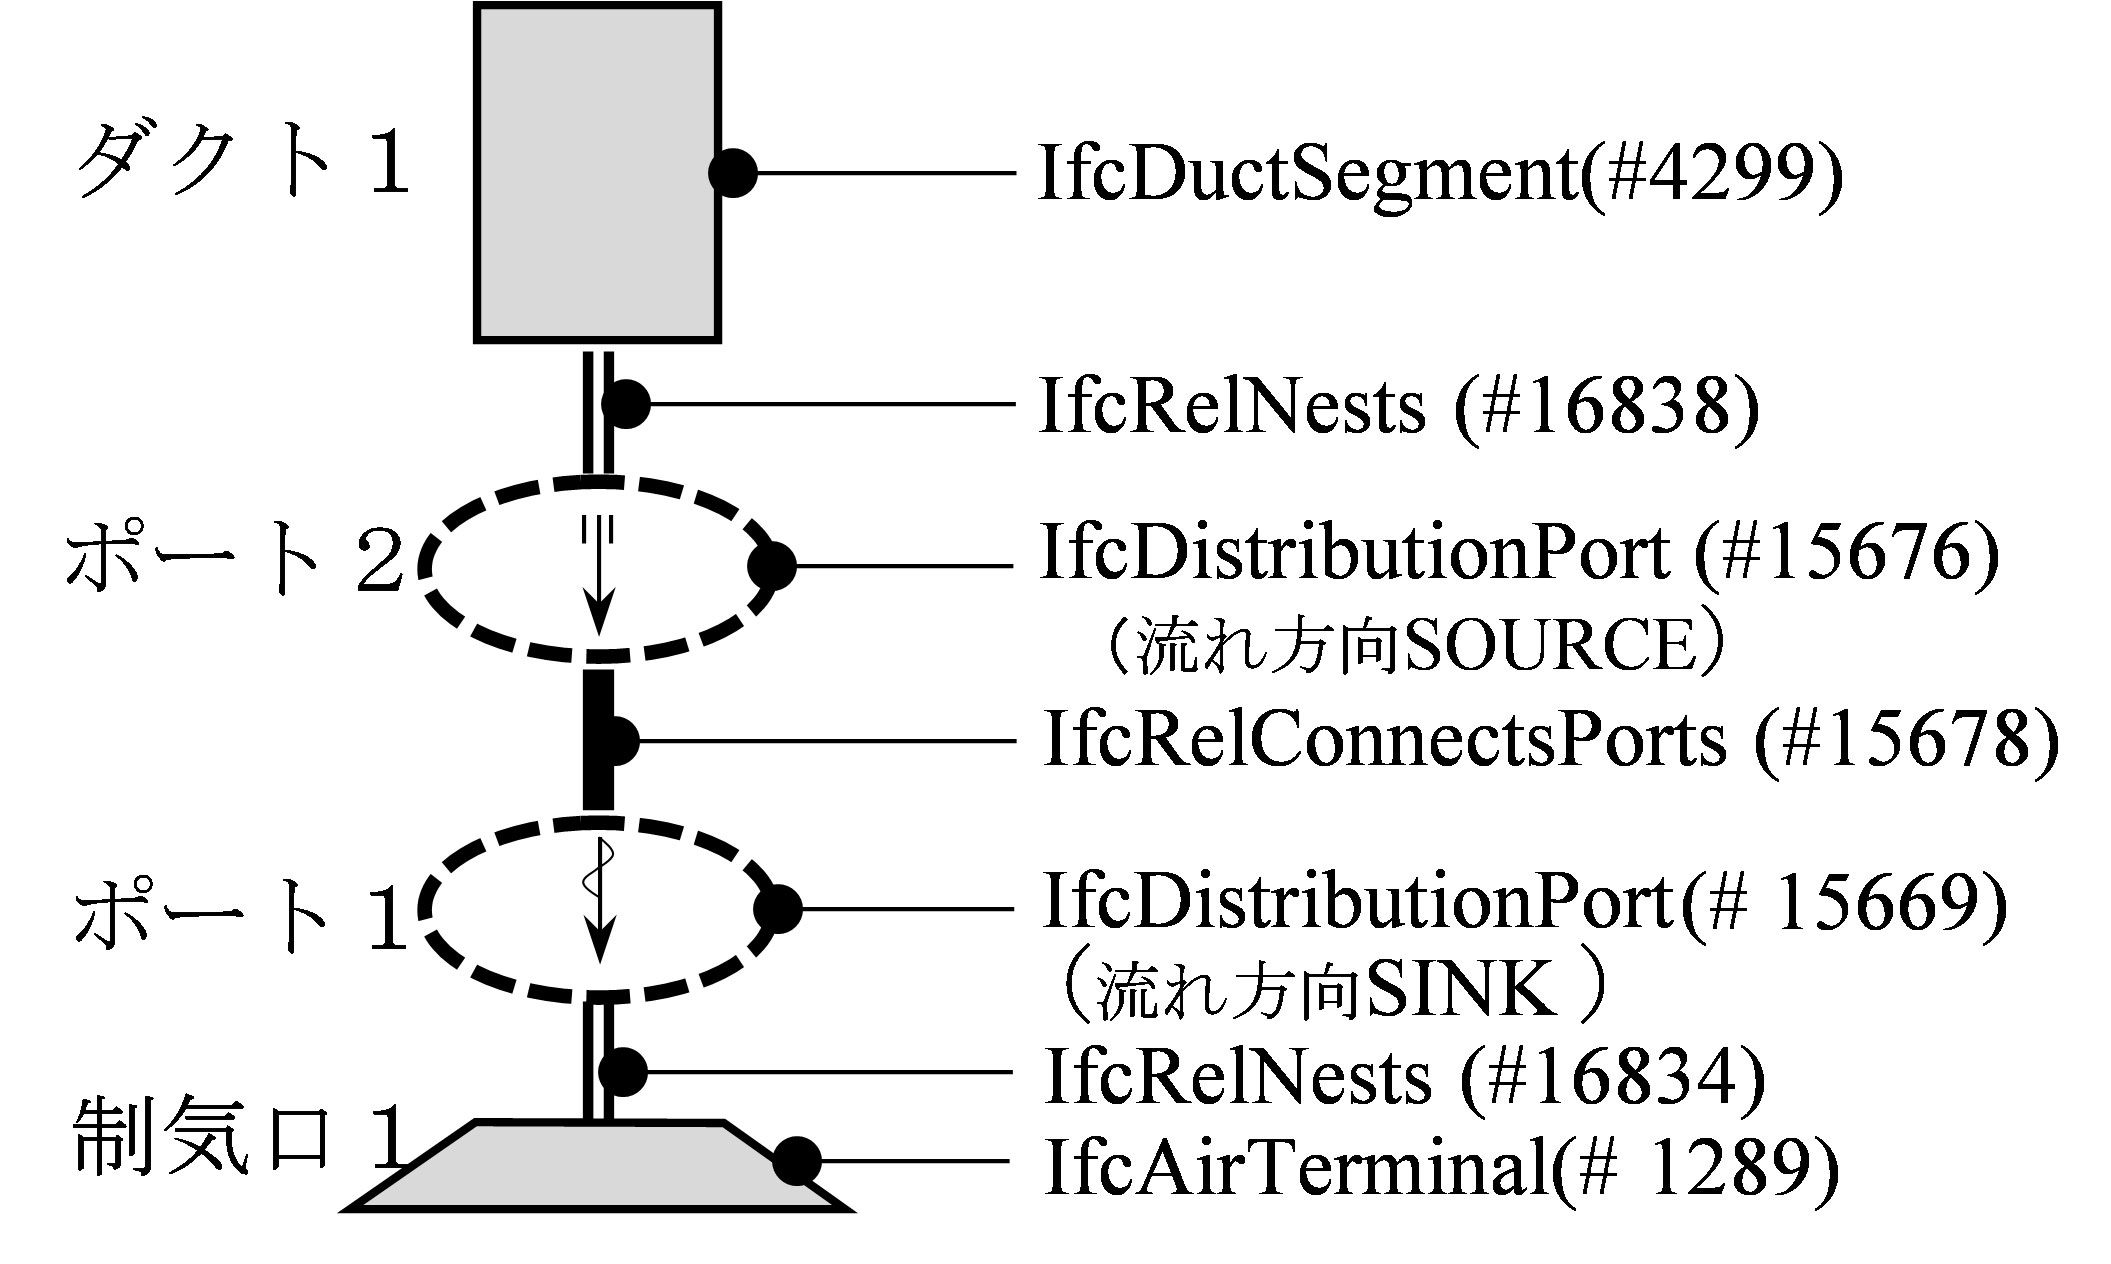 設備要素間IFCデータの接続状況